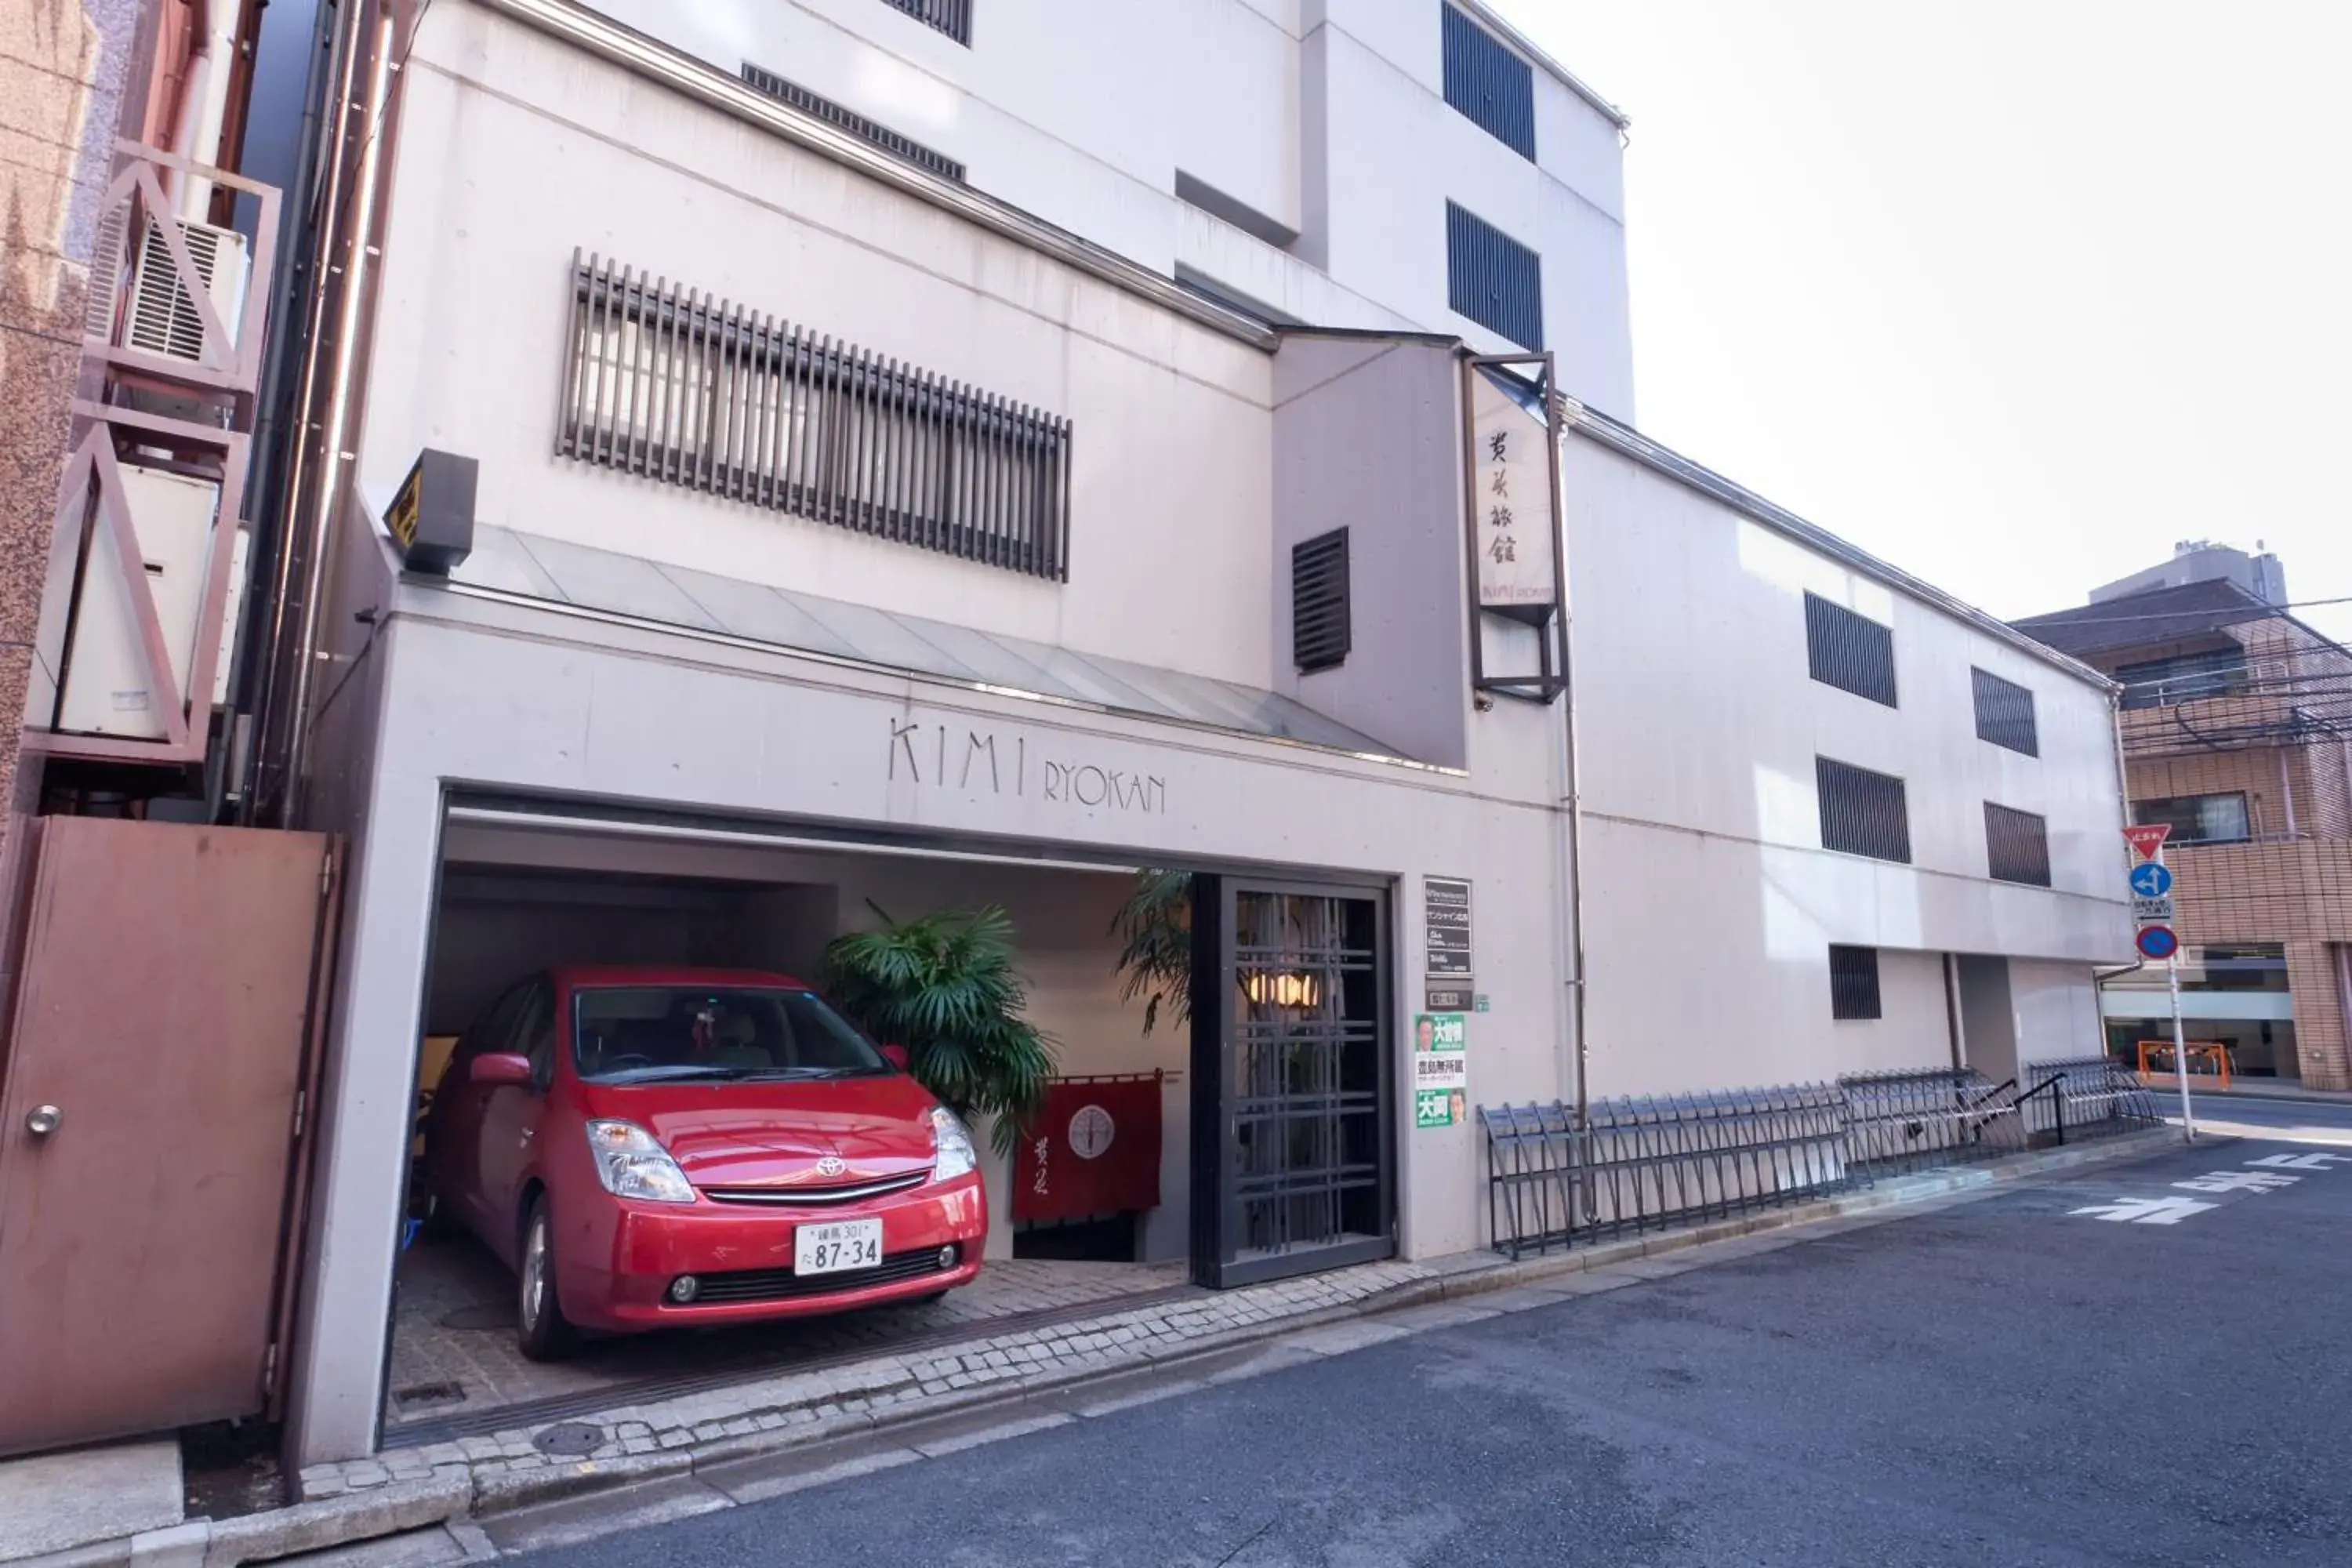 Property Building in Kimi Ryokan